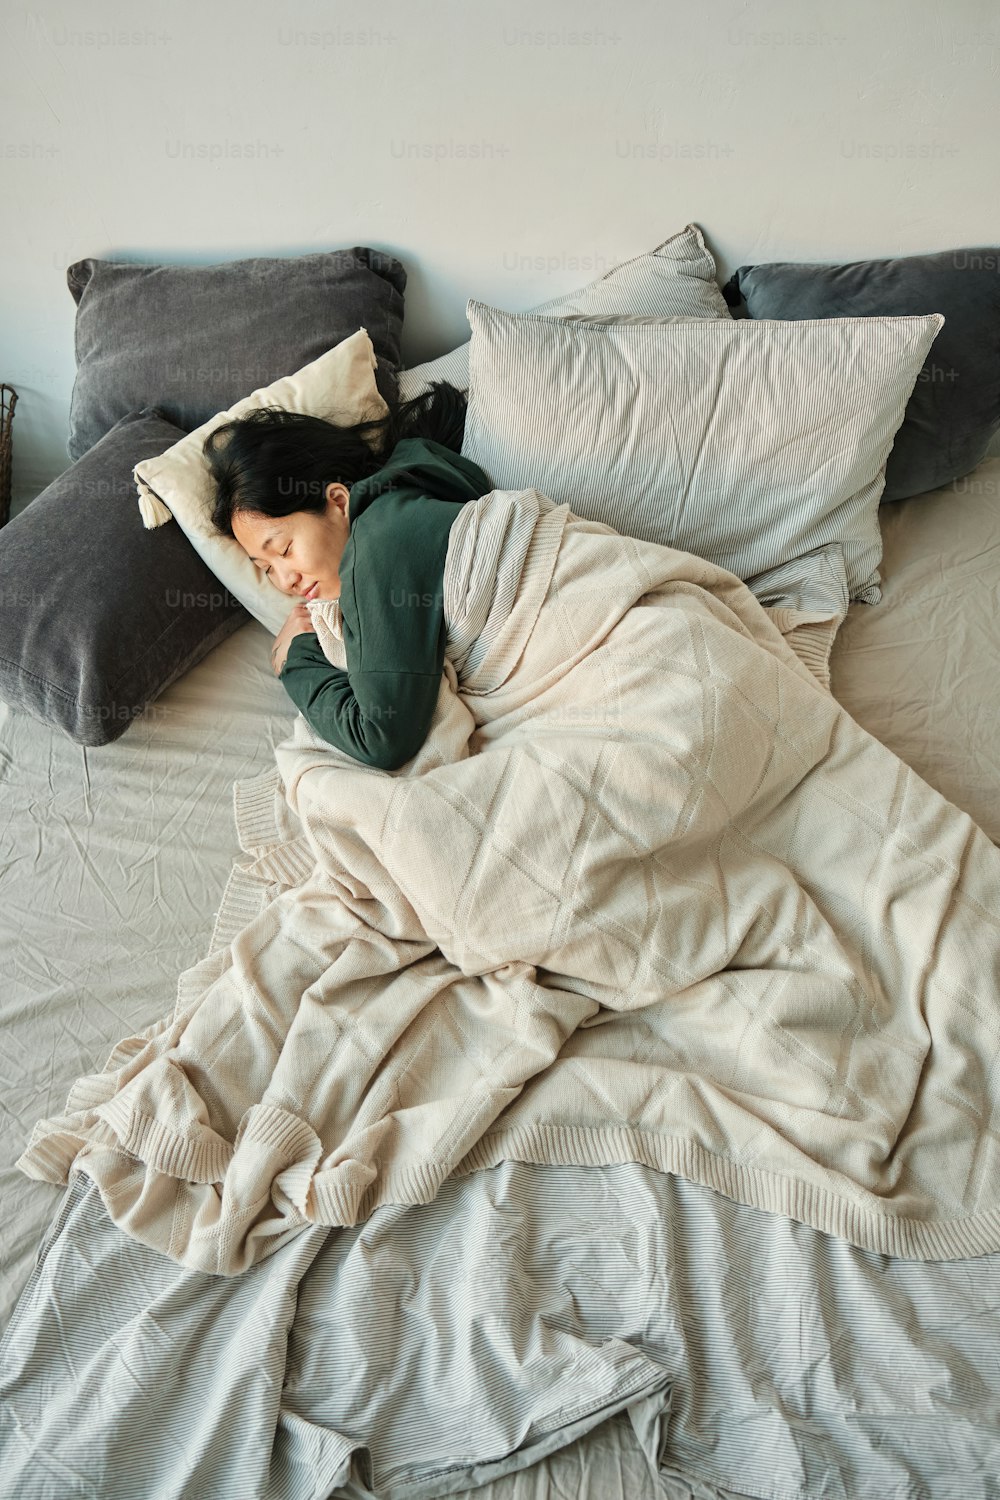 Une femme dort sur un lit avec beaucoup d’oreillers